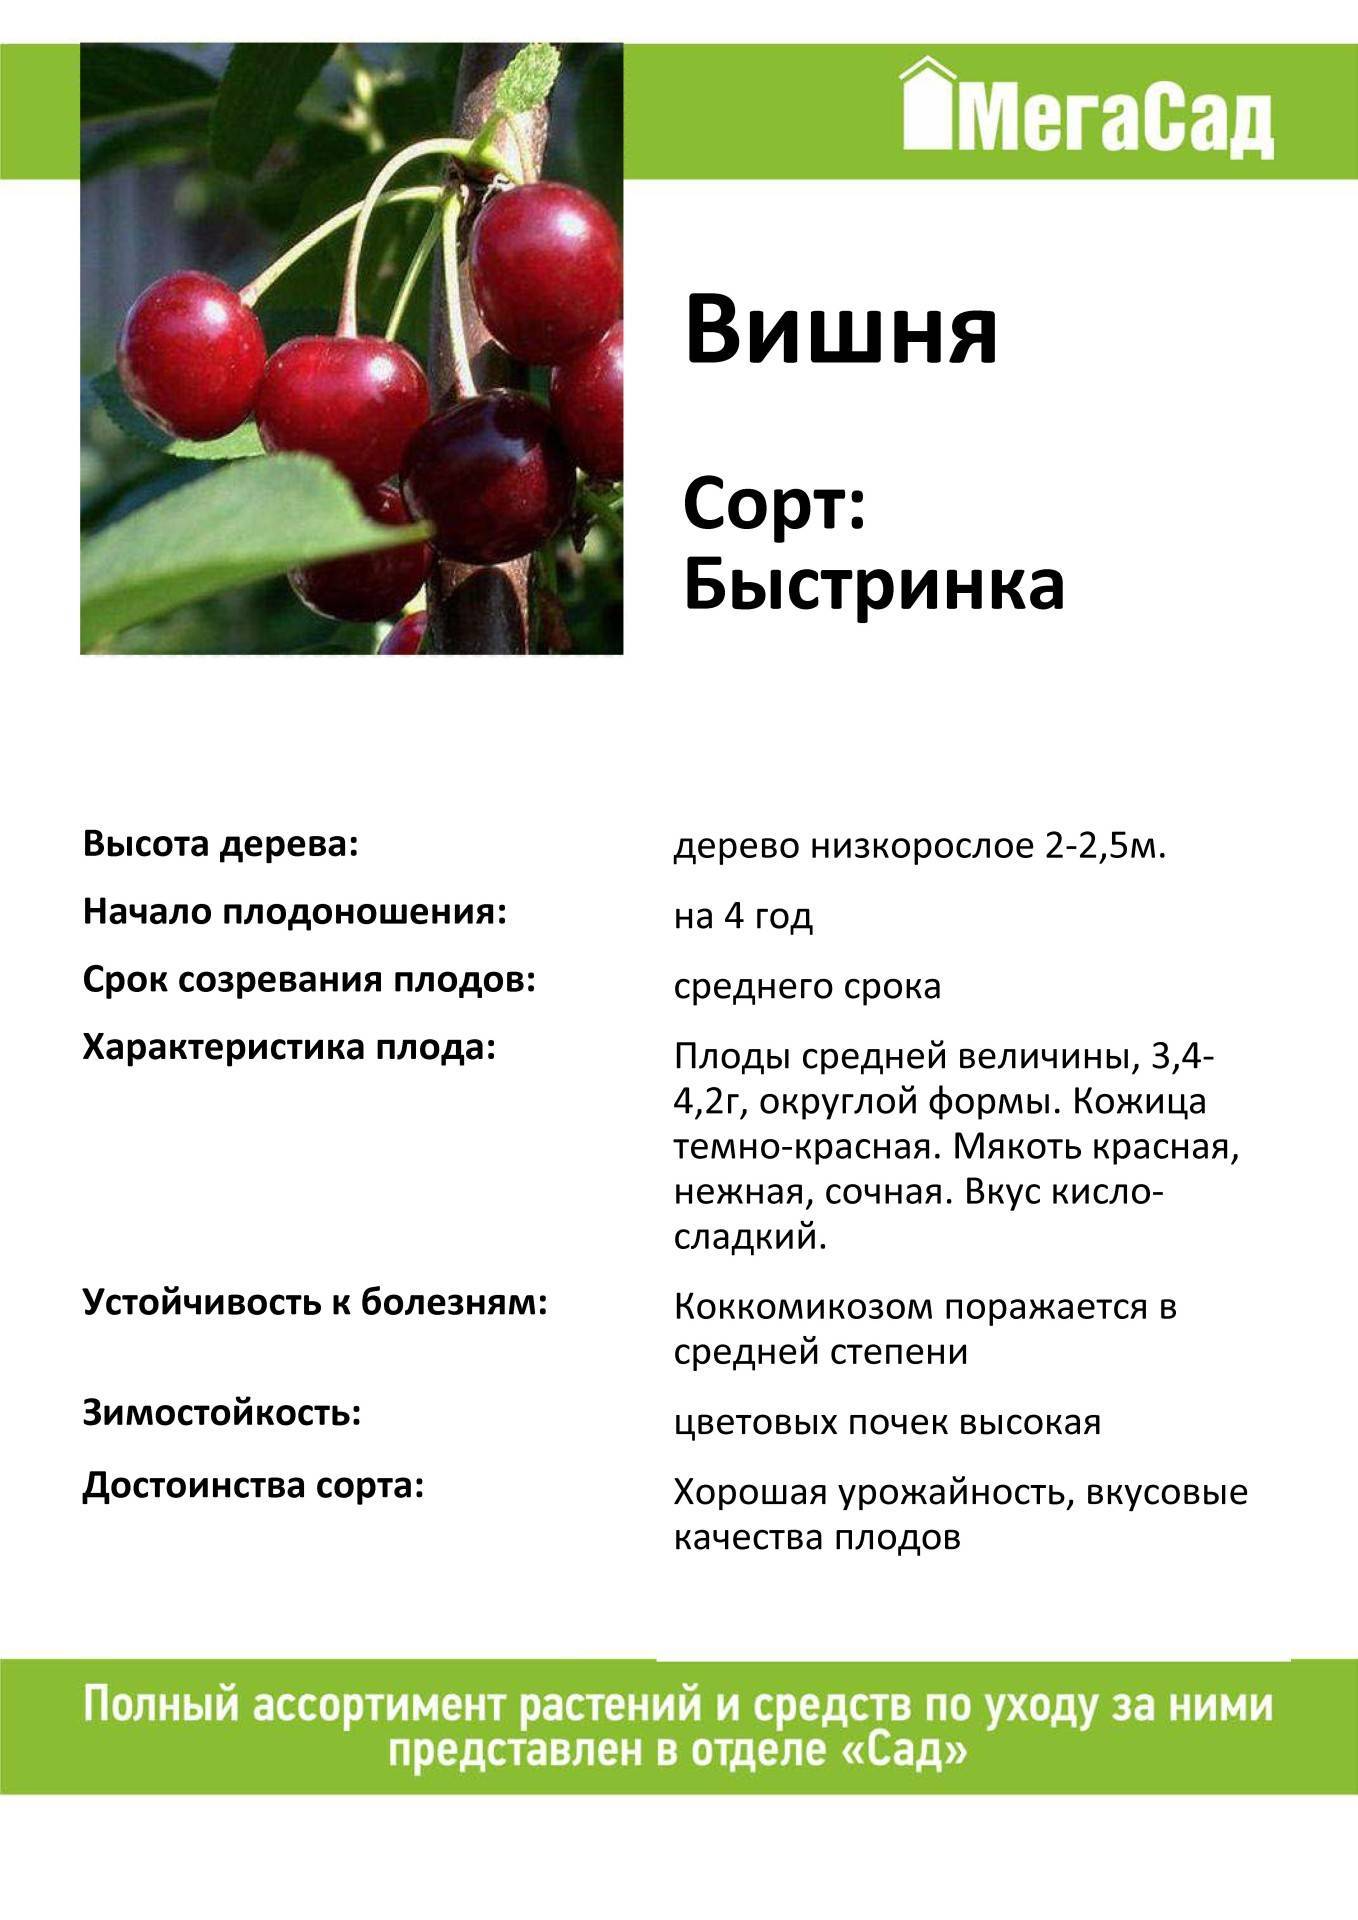 Черешня для ленинградской области: самоплодные сорта, для северо-западного региона, описание, отзывы